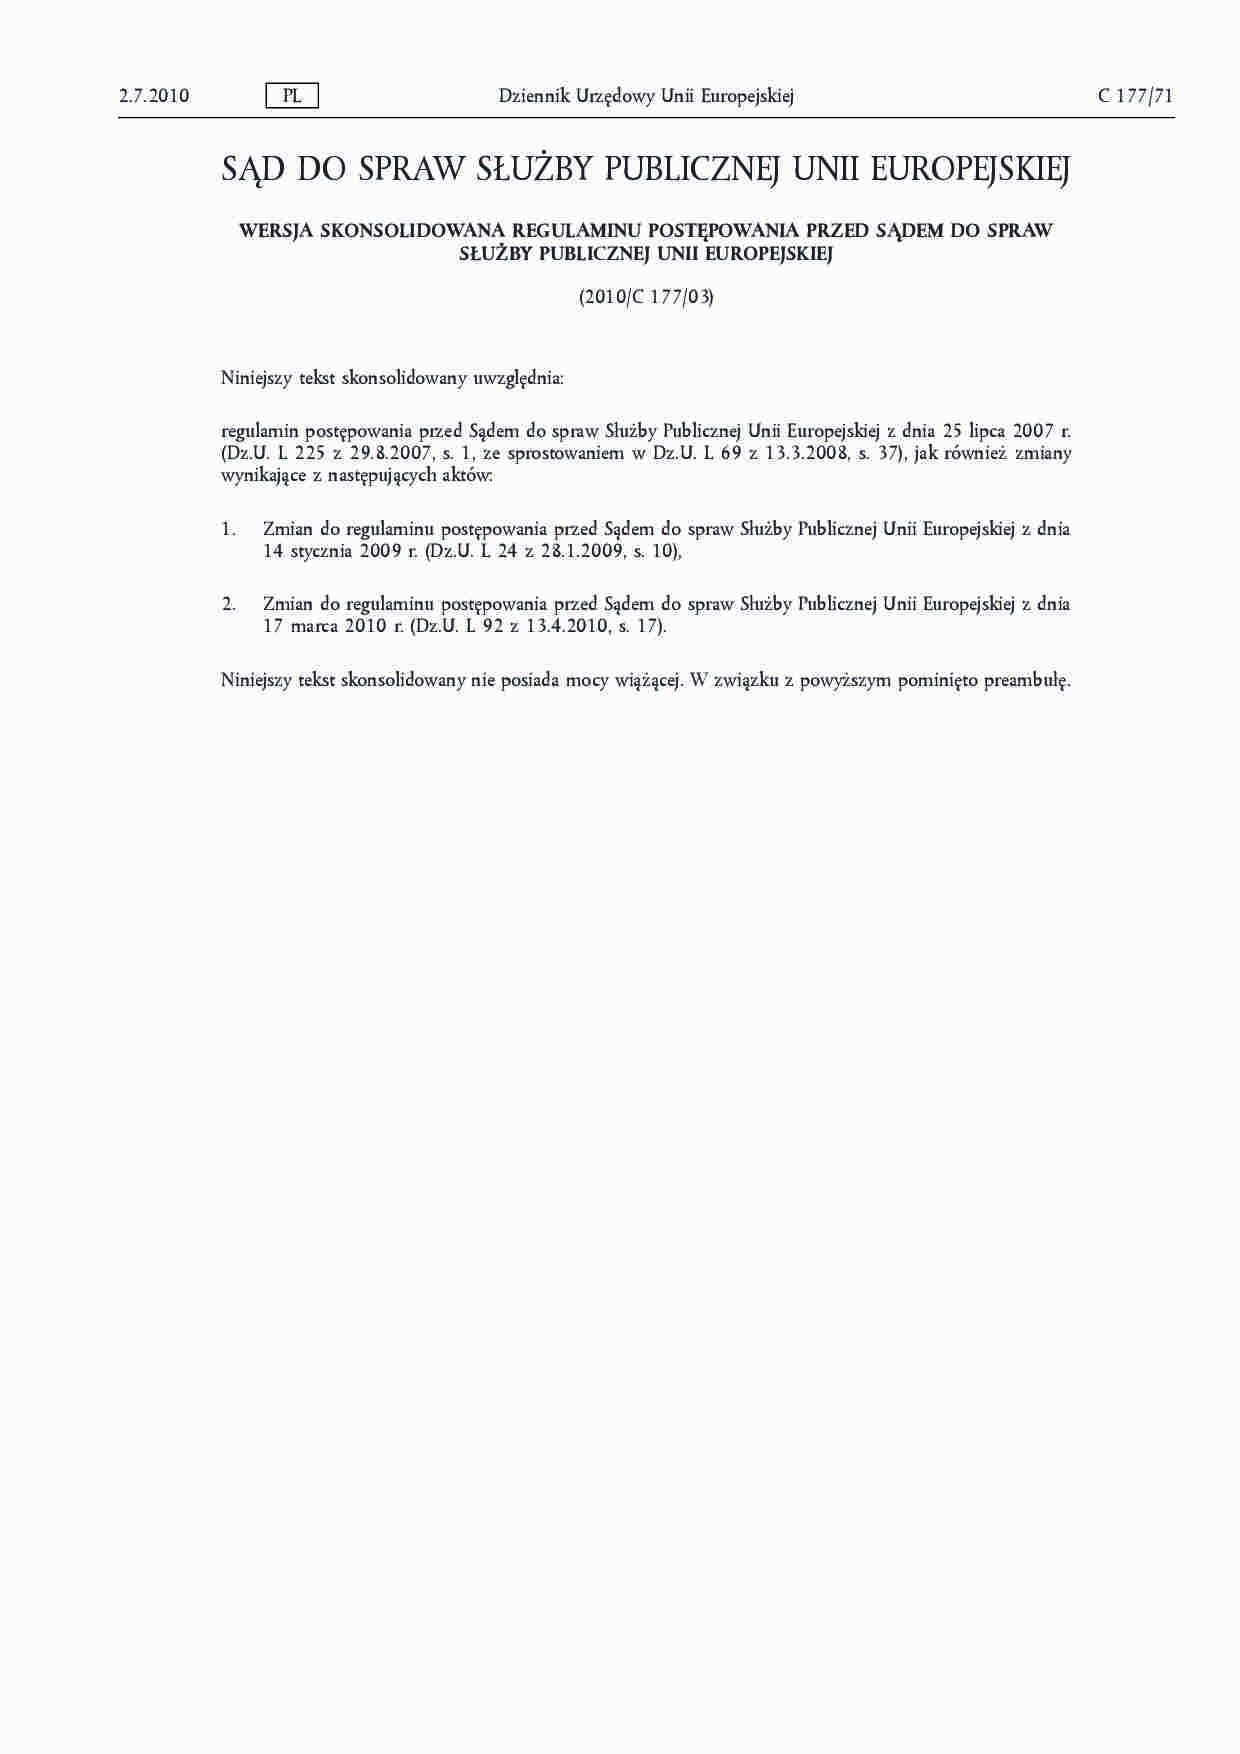 Regulamin Służby Publicznej Unii Europejskiej - 2 lipca 2010 - strona 1